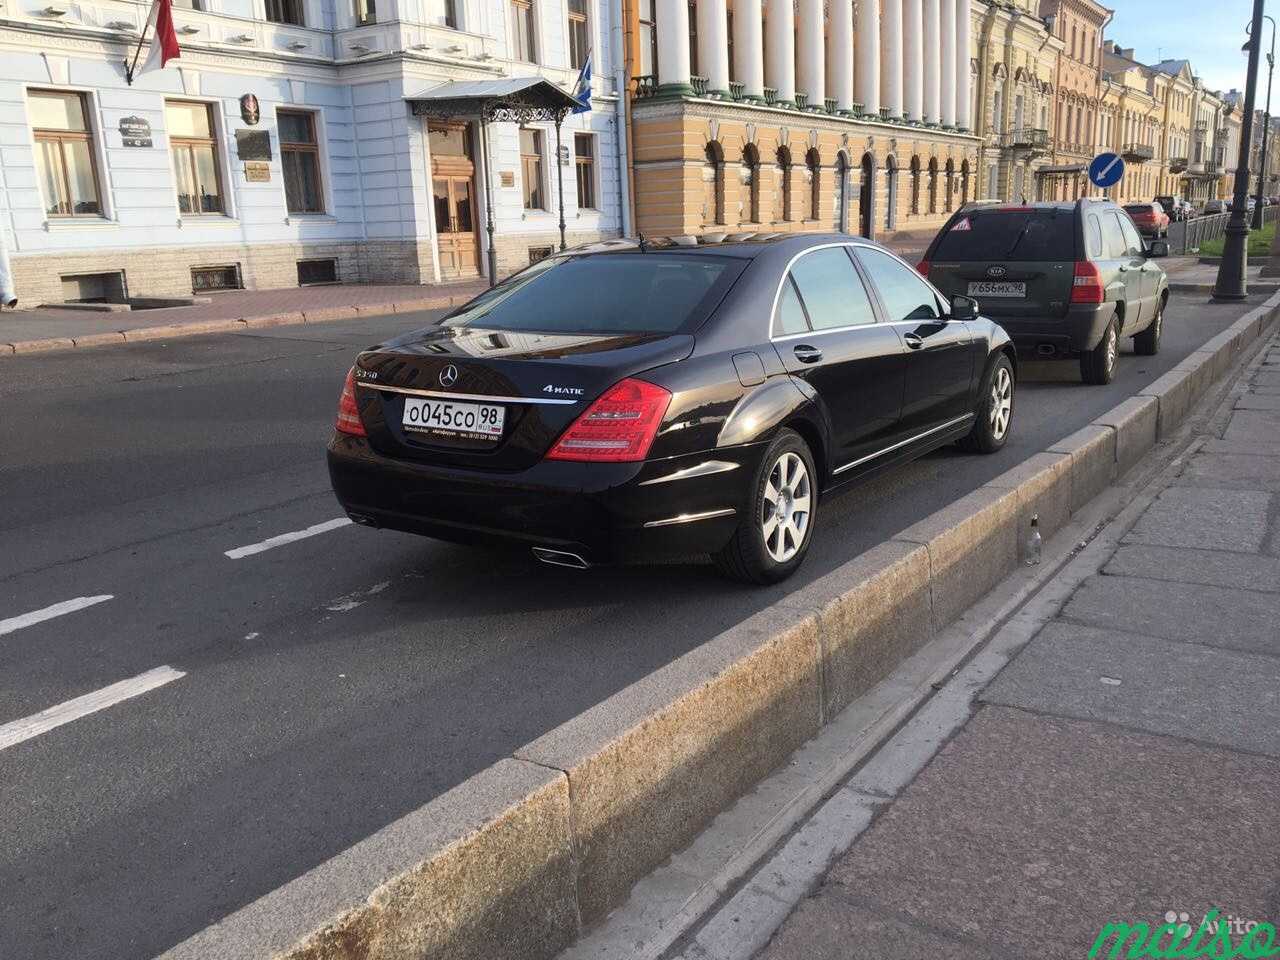 Аренда Мерседес long s w221 с водителем в Санкт-Петербурге. Фото 6